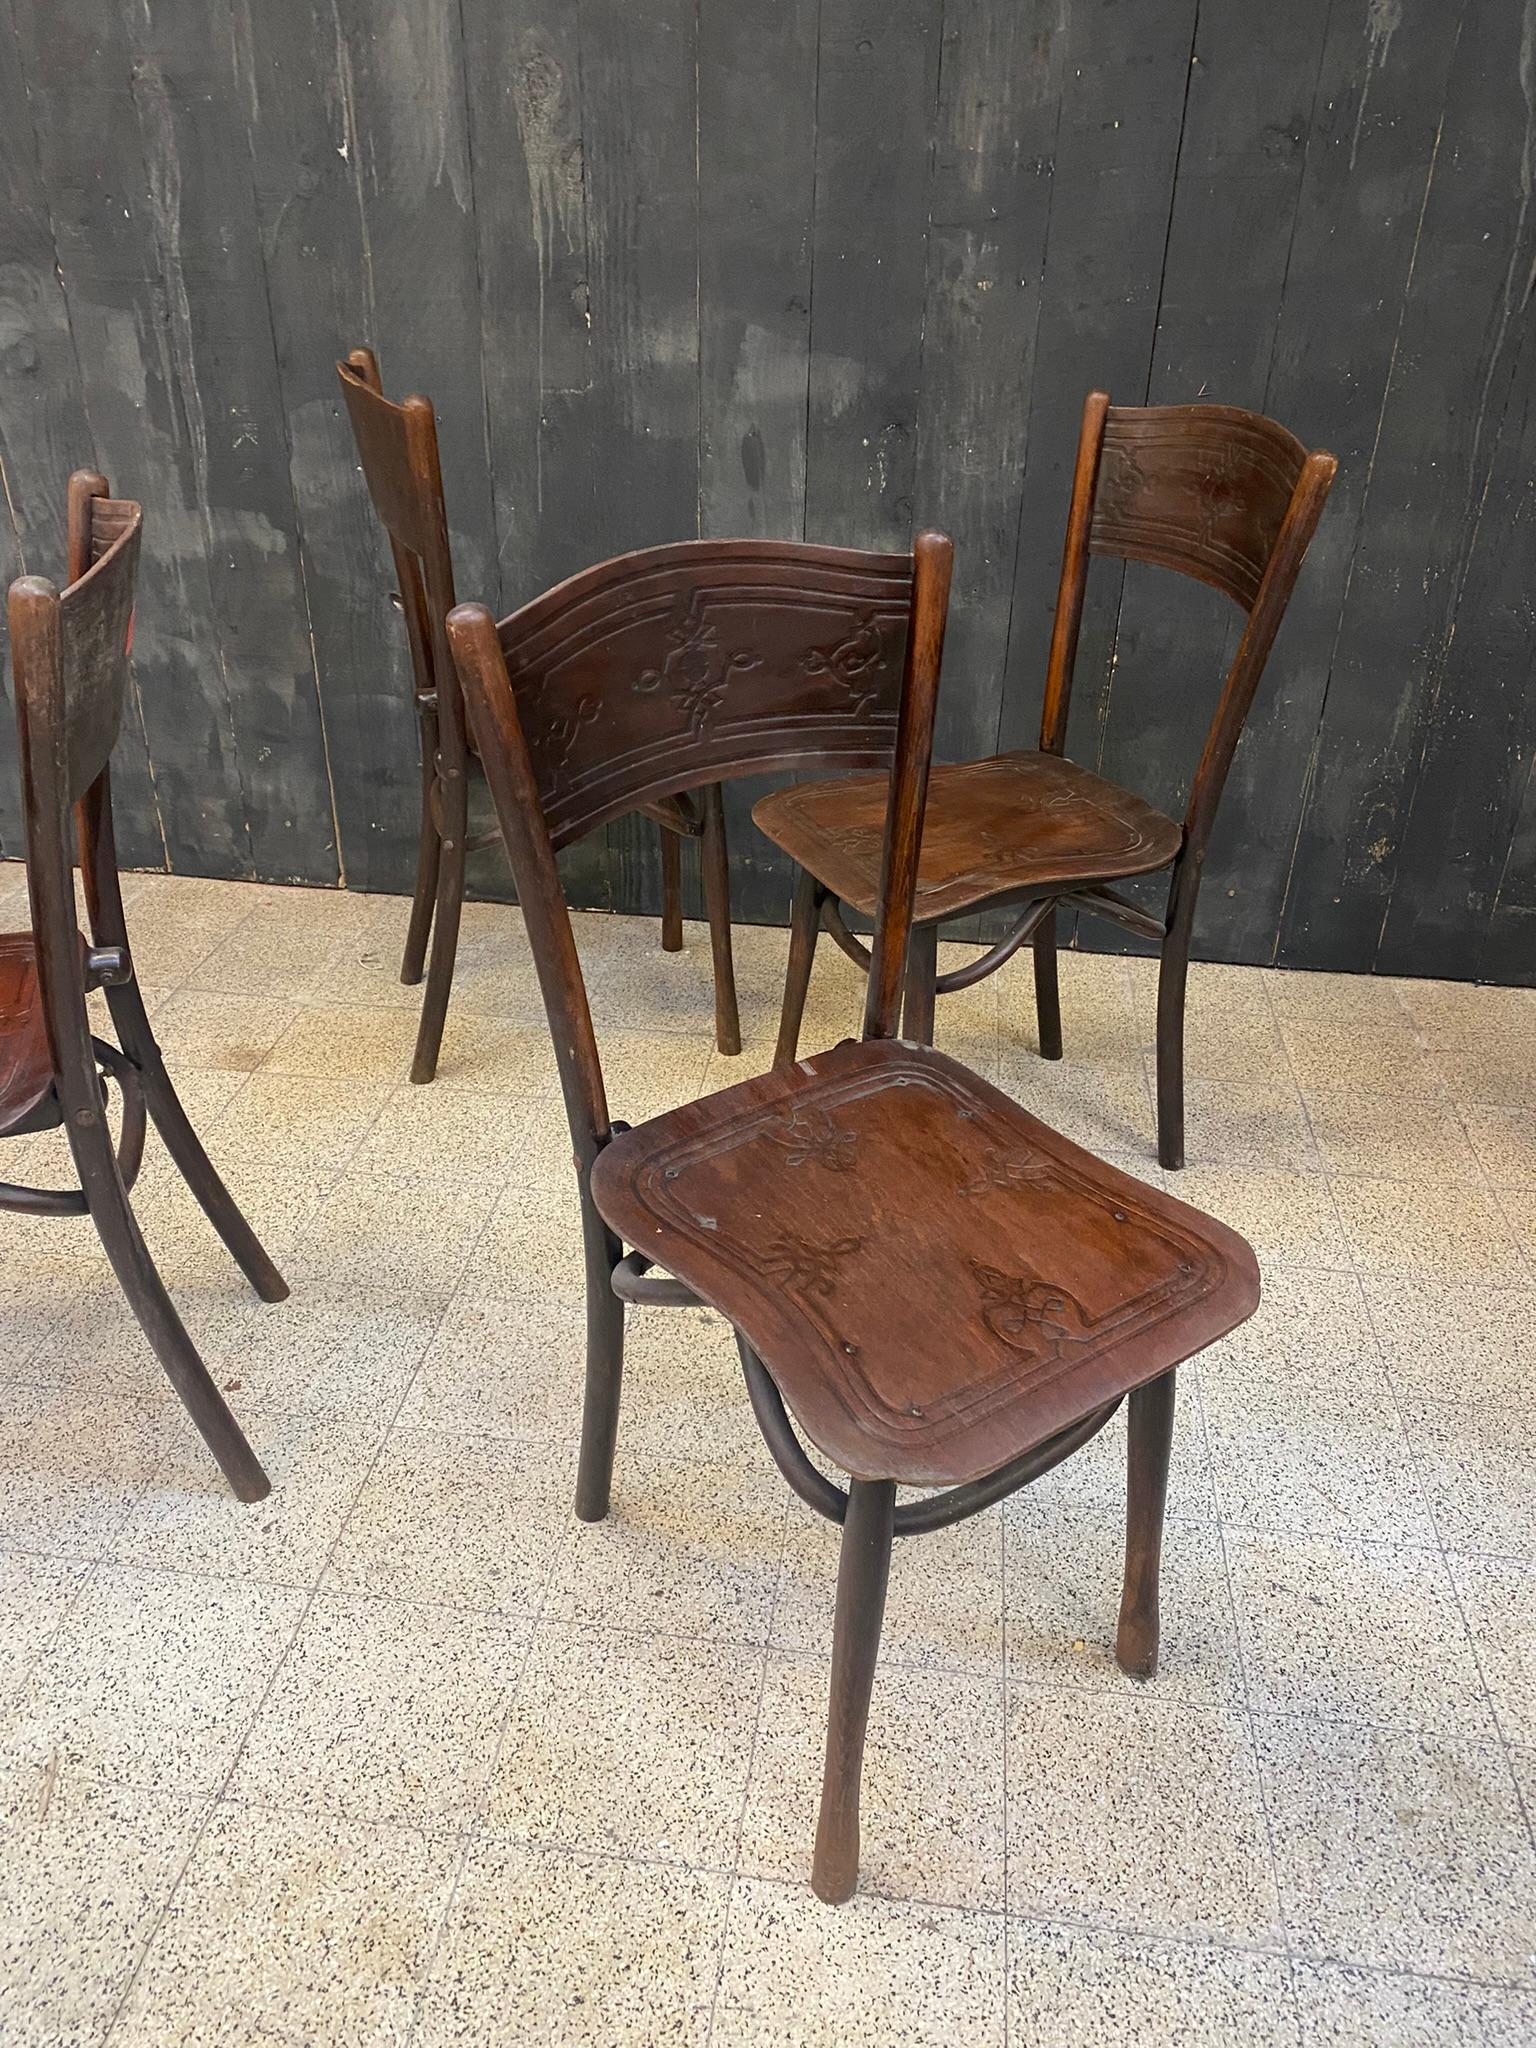 4 antike Stühle von Jacob & Josef Kohn,
um 1900.
Einige Schwachstellen.